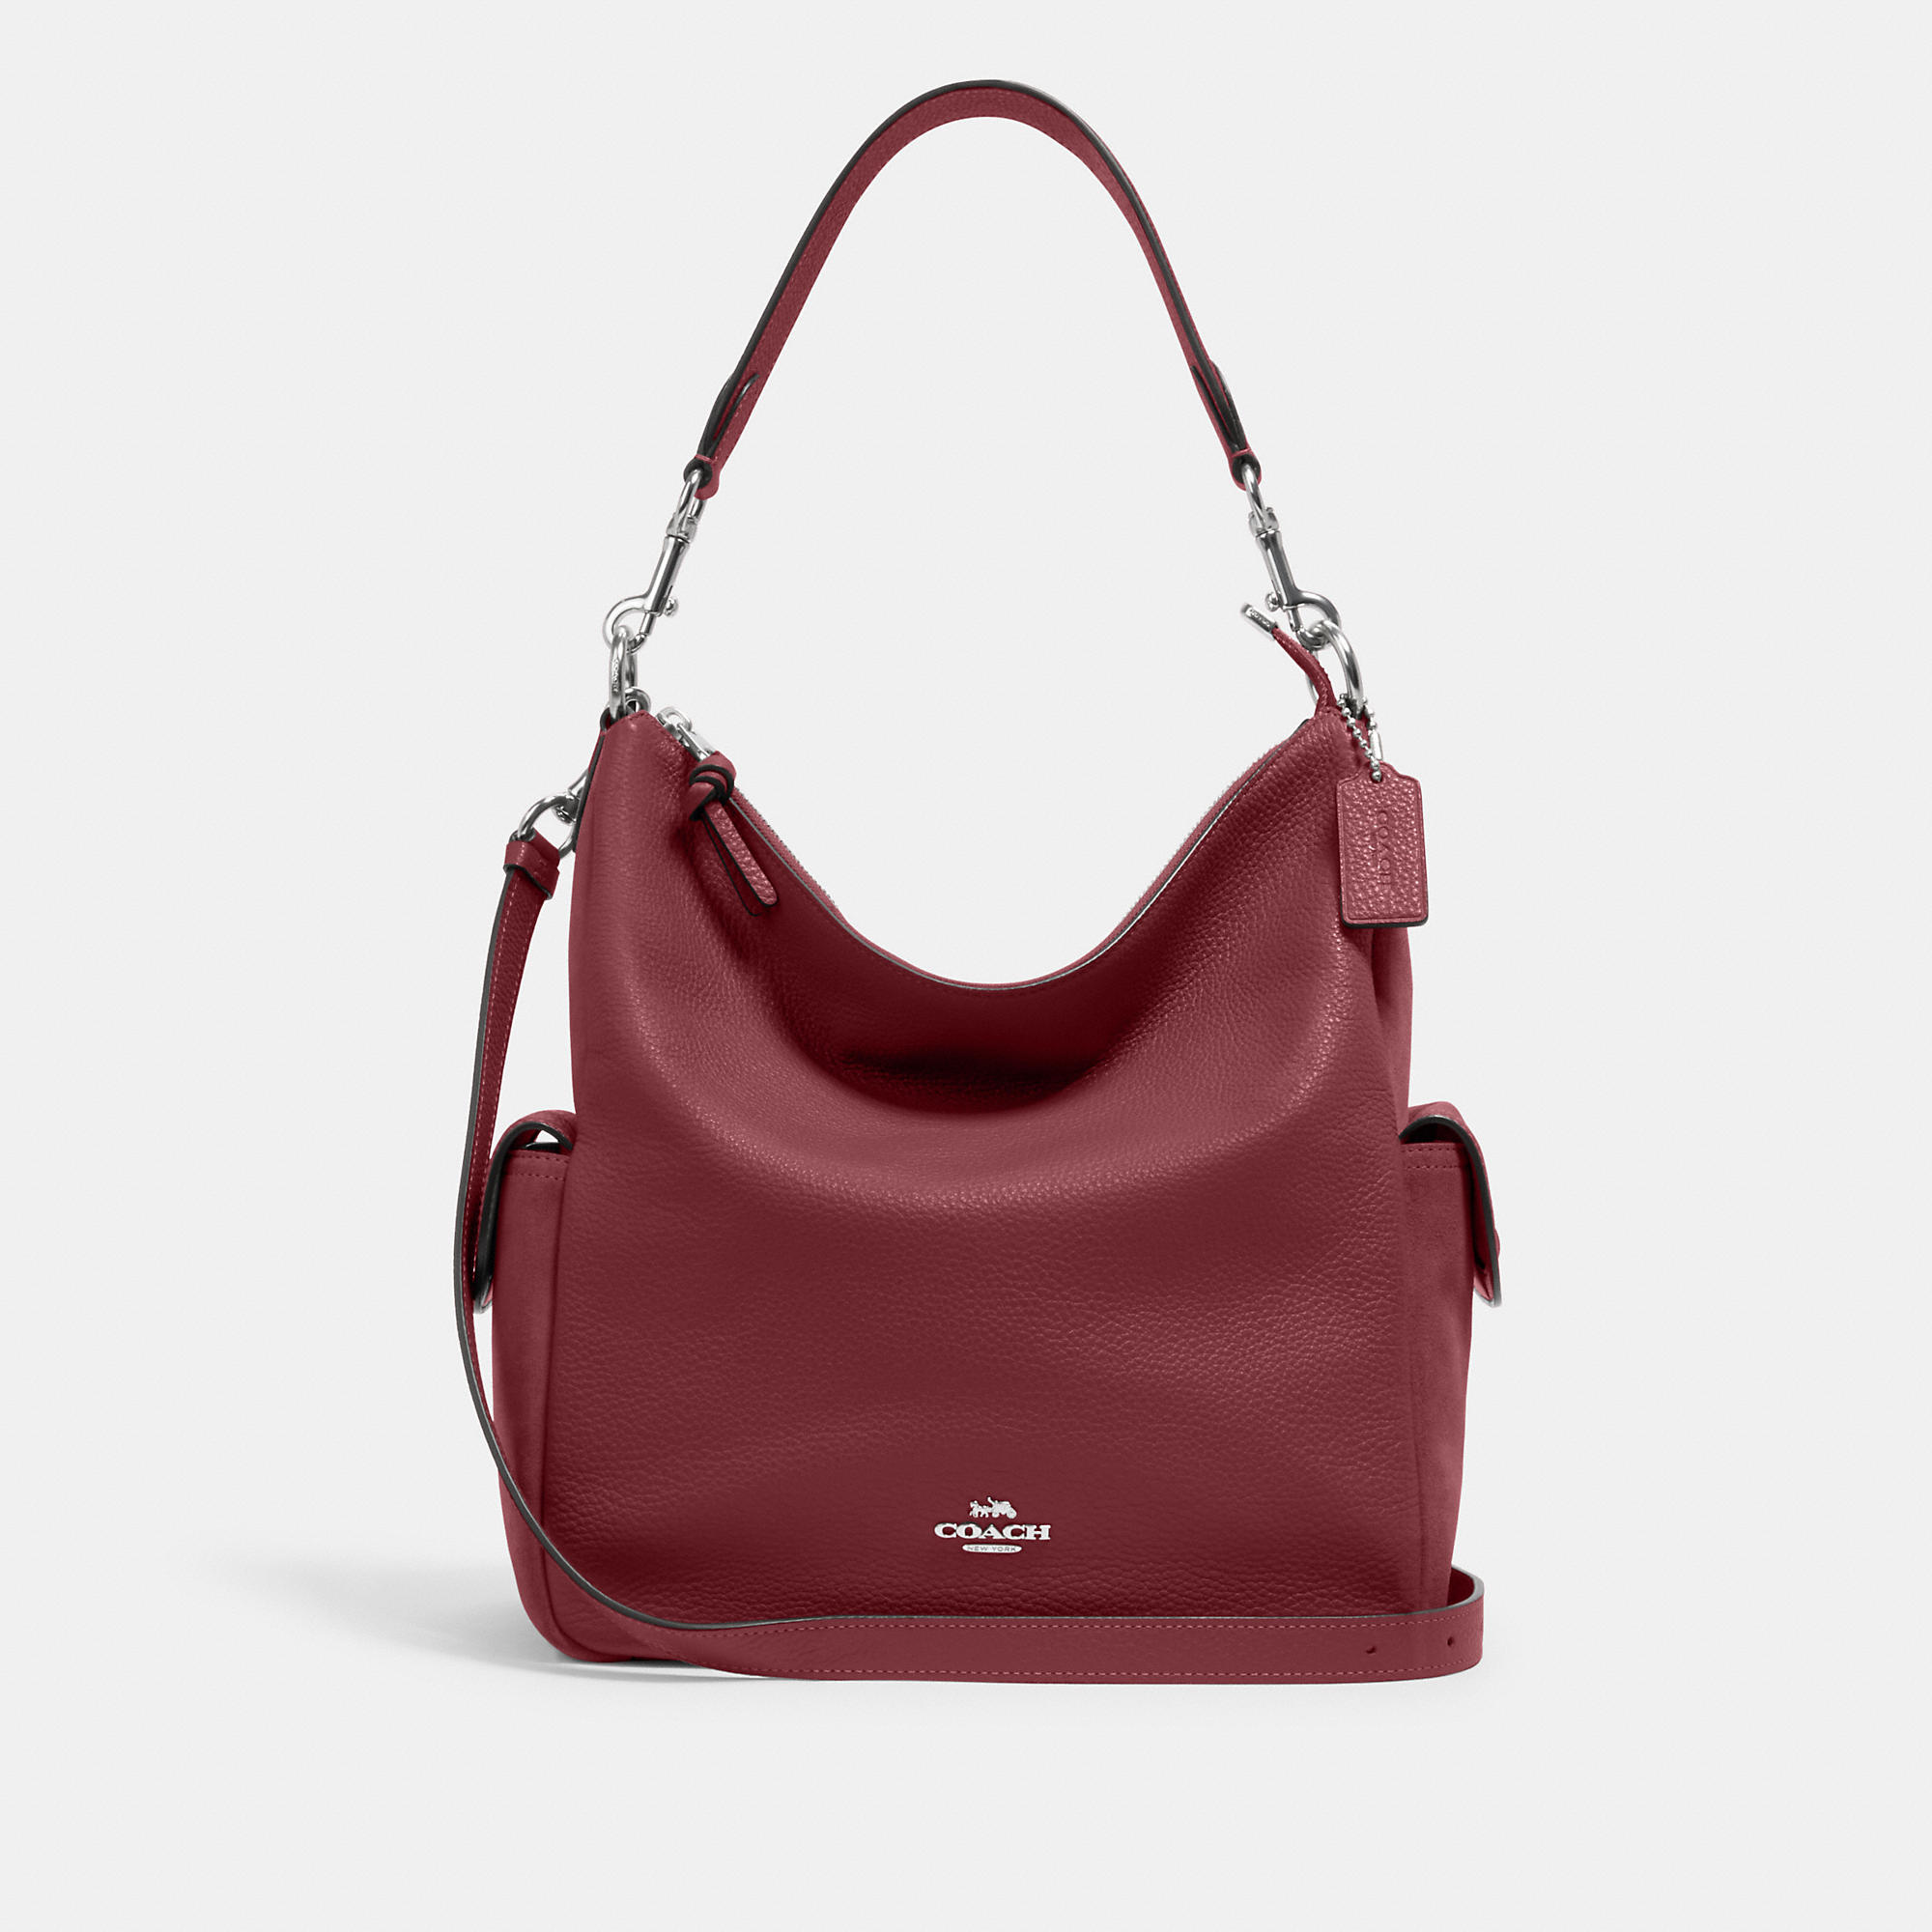 COACH Women's Pennie Shoulder Bag - Gold/Cherry